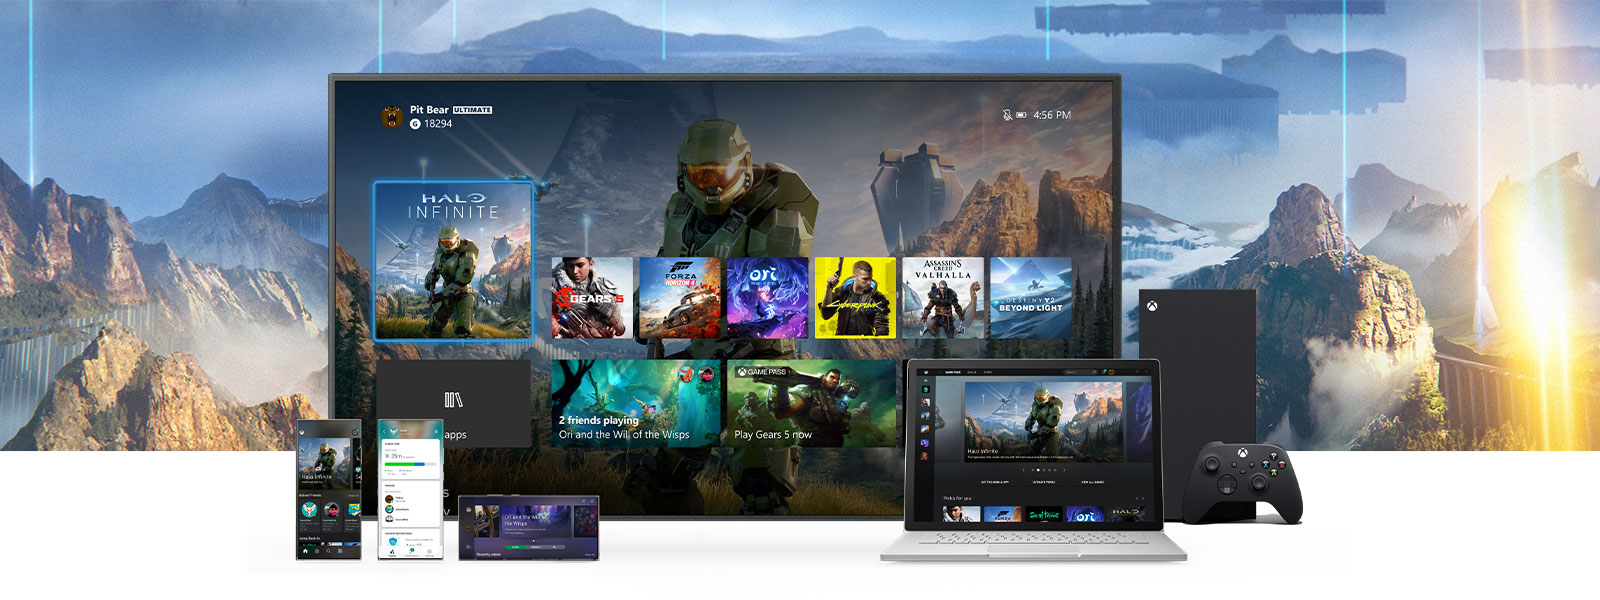 Ο πίνακας οργάνων Xbox εμφανίζεται σε μια τηλεόραση δίπλα σε ένα Xbox Series X. Υπάρχουν και άλλες συσκευές, όπως ένα PC και κινητές συσκευές, μπροστά από την τηλεόραση.